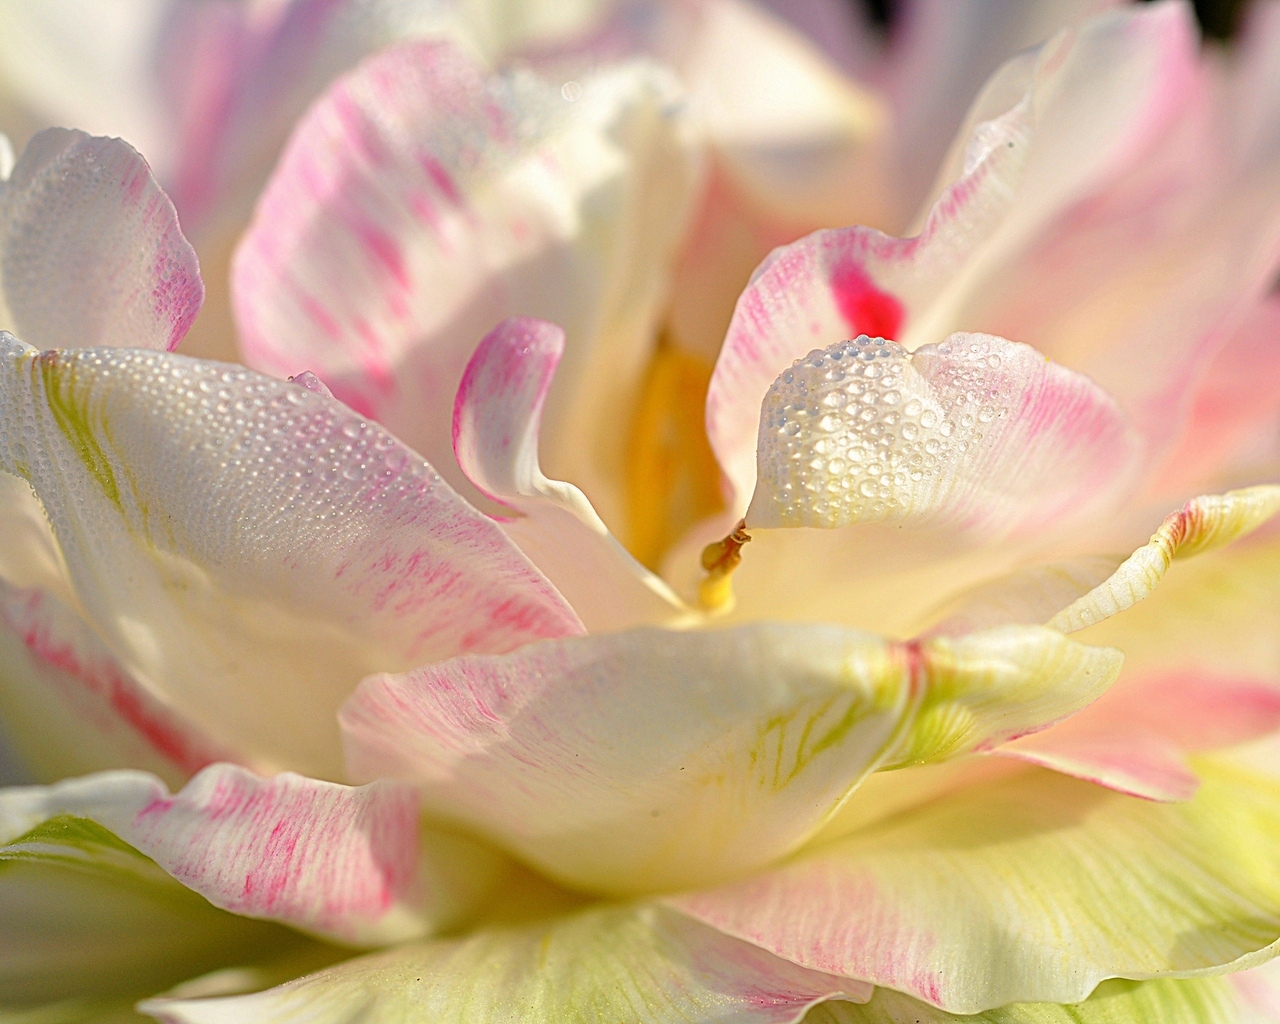 Magnolia Petals for 1280 x 1024 resolution